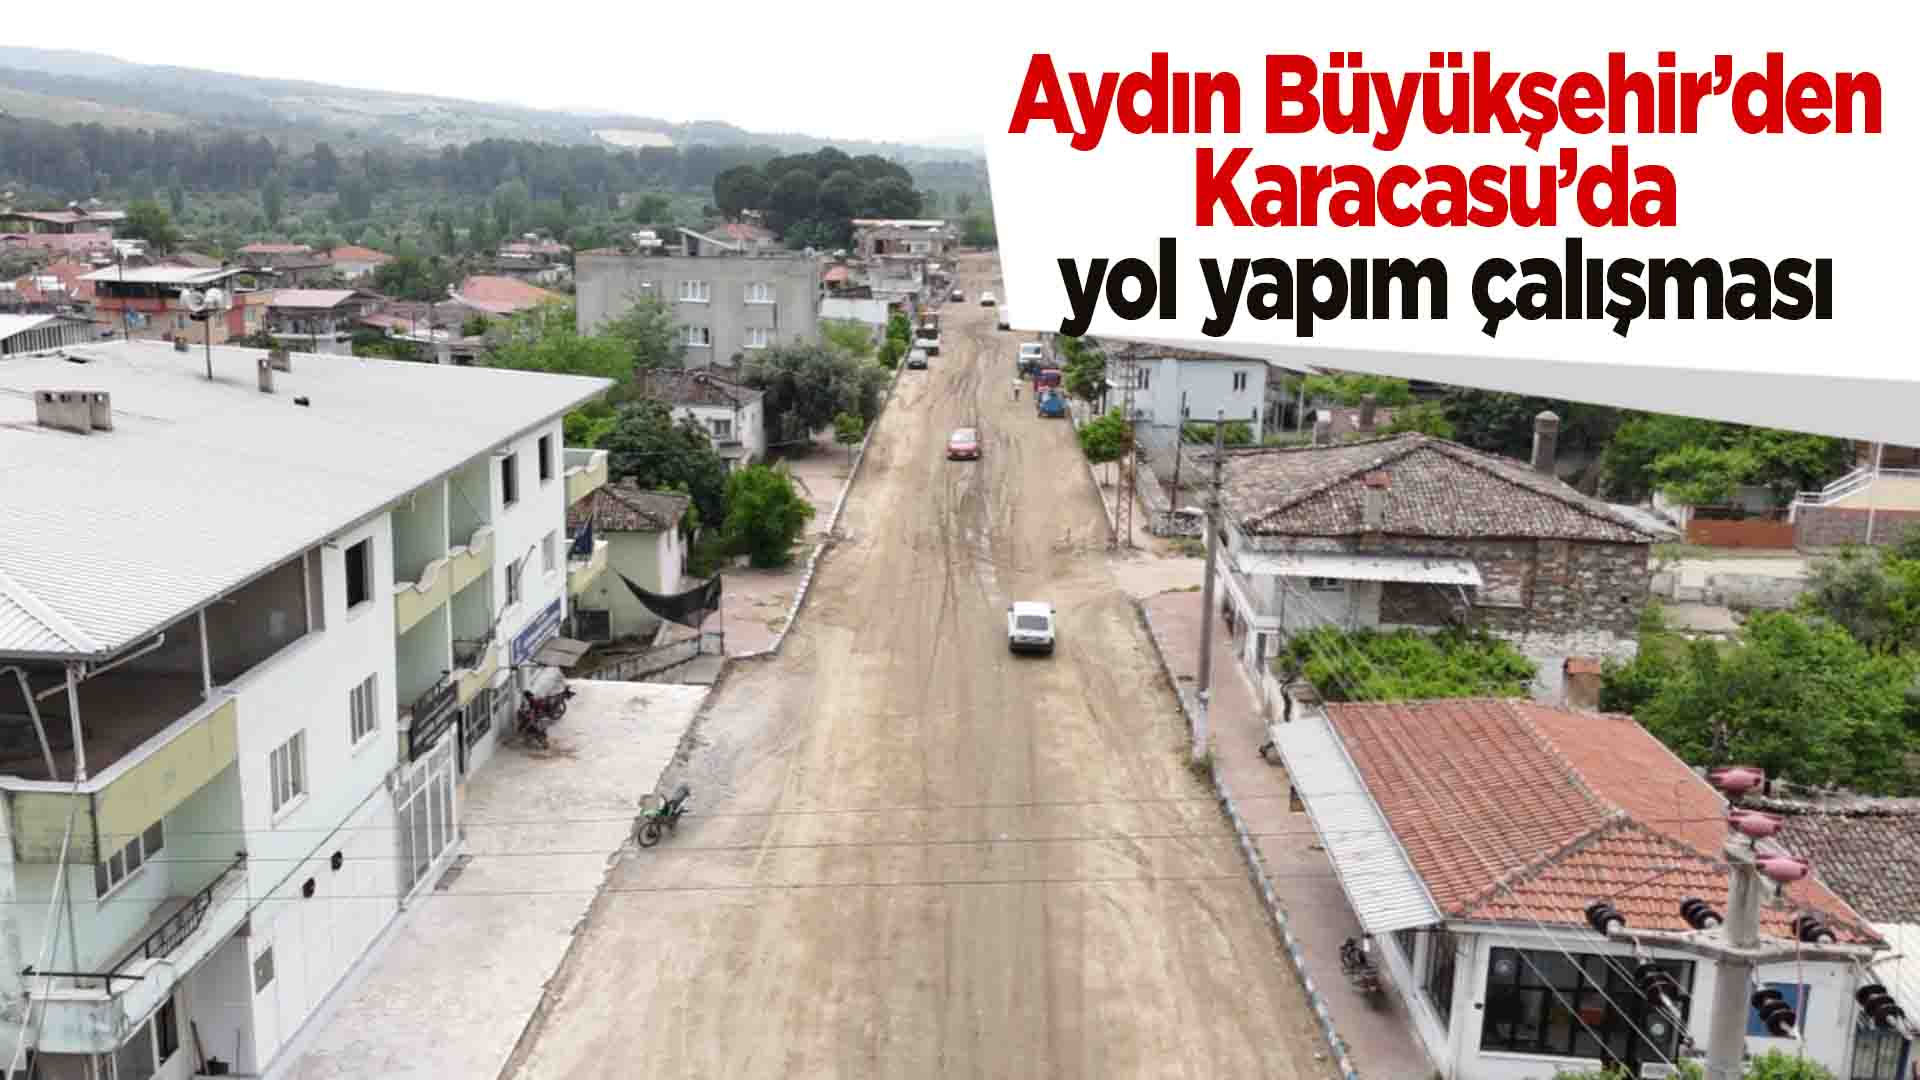 Aydın Büyükşehir'den Karacasu'da yol yapım çalışması